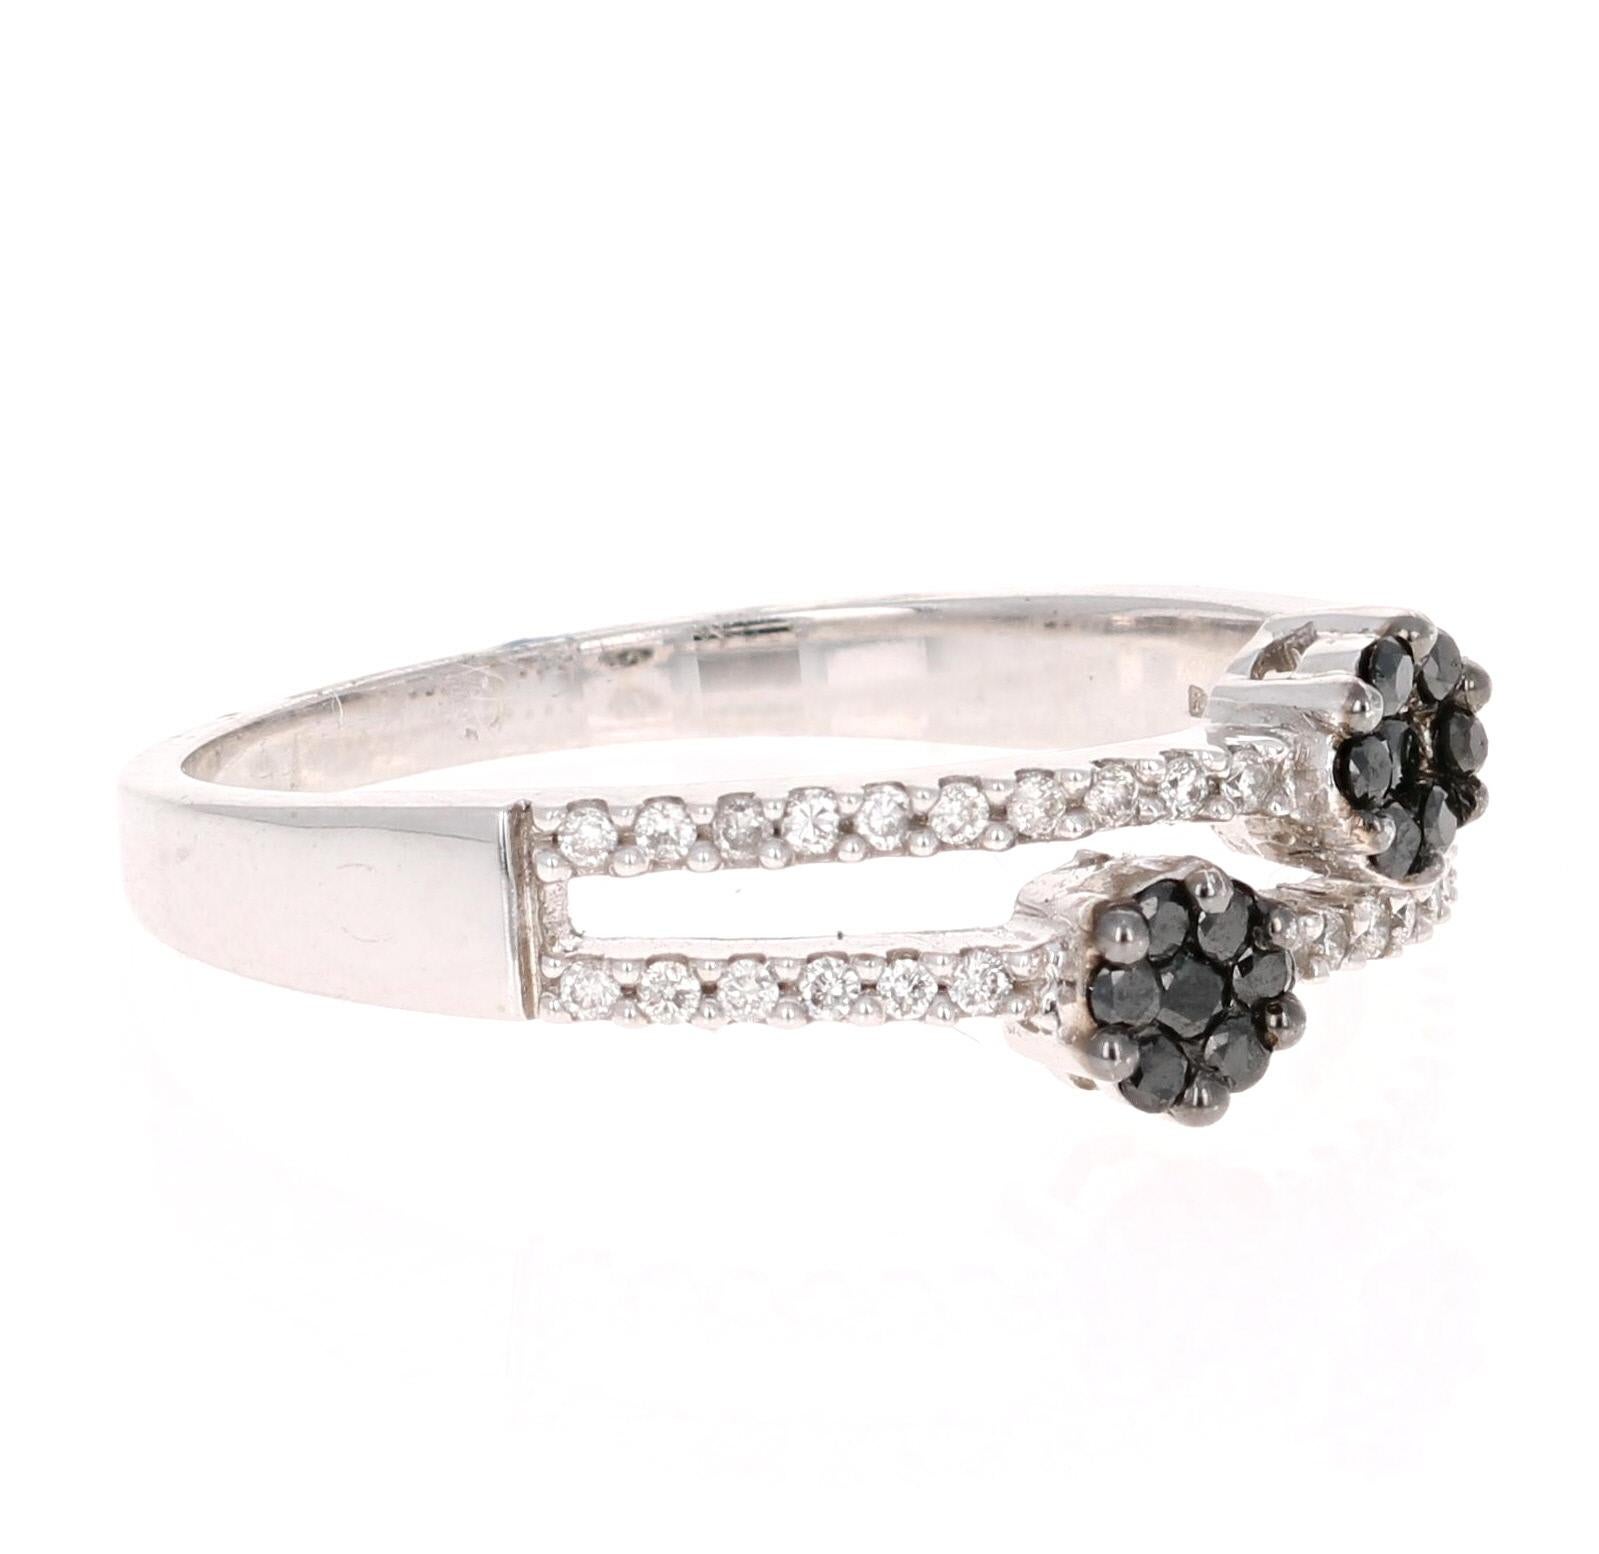 Ein einfacher, alltäglicher schwarz-weißer Blumenring! Dieses klassische Design passt zu fast allem in Ihrer Garderobe und kann eine hübsche Ergänzung zu anderen Ringen an Ihrer Hand sein! 
Insgesamt gibt es 46 schwarze und weiße Diamanten im